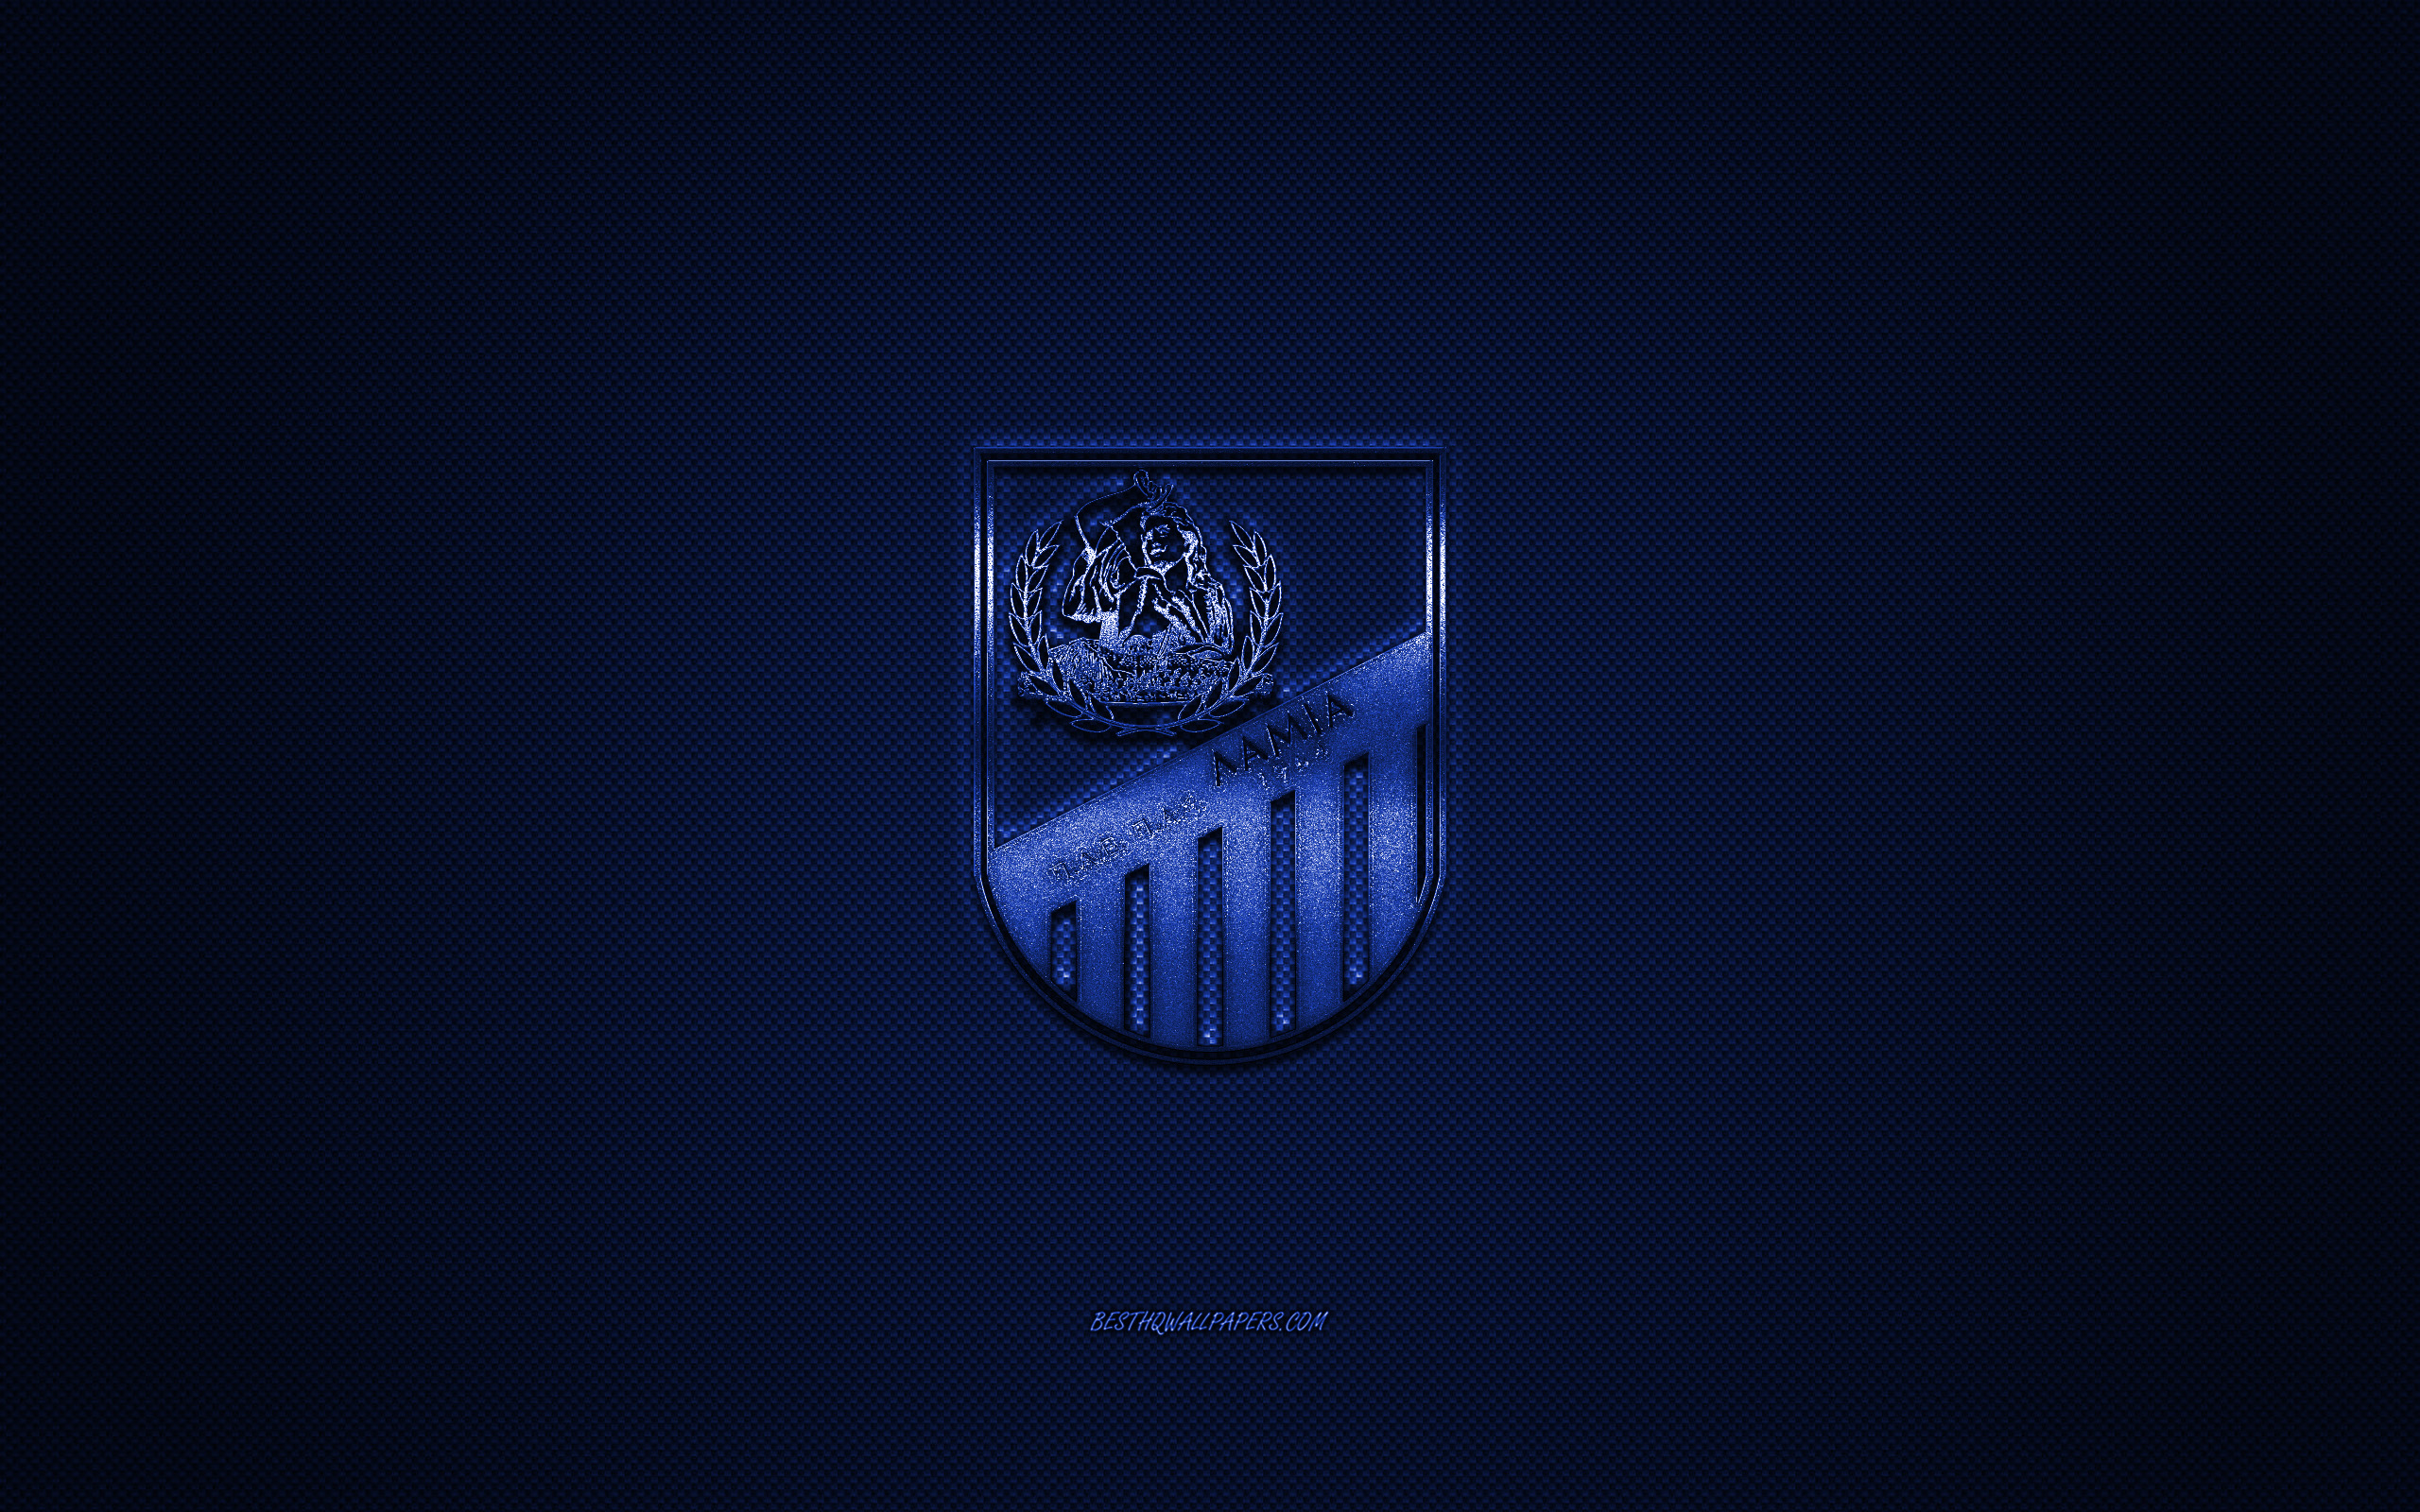 ダウンロード画像 Pas Lamia1964年 ギリシャのサッカークラブ スーパーリーグのギリシャ 青色のロゴ ブルーカーボンファイバの背景 サッカー Lamia ギリシャ Pas Lamia1964年にロゴ 画面の解像度 2560x1600 壁紙デスクトップ上